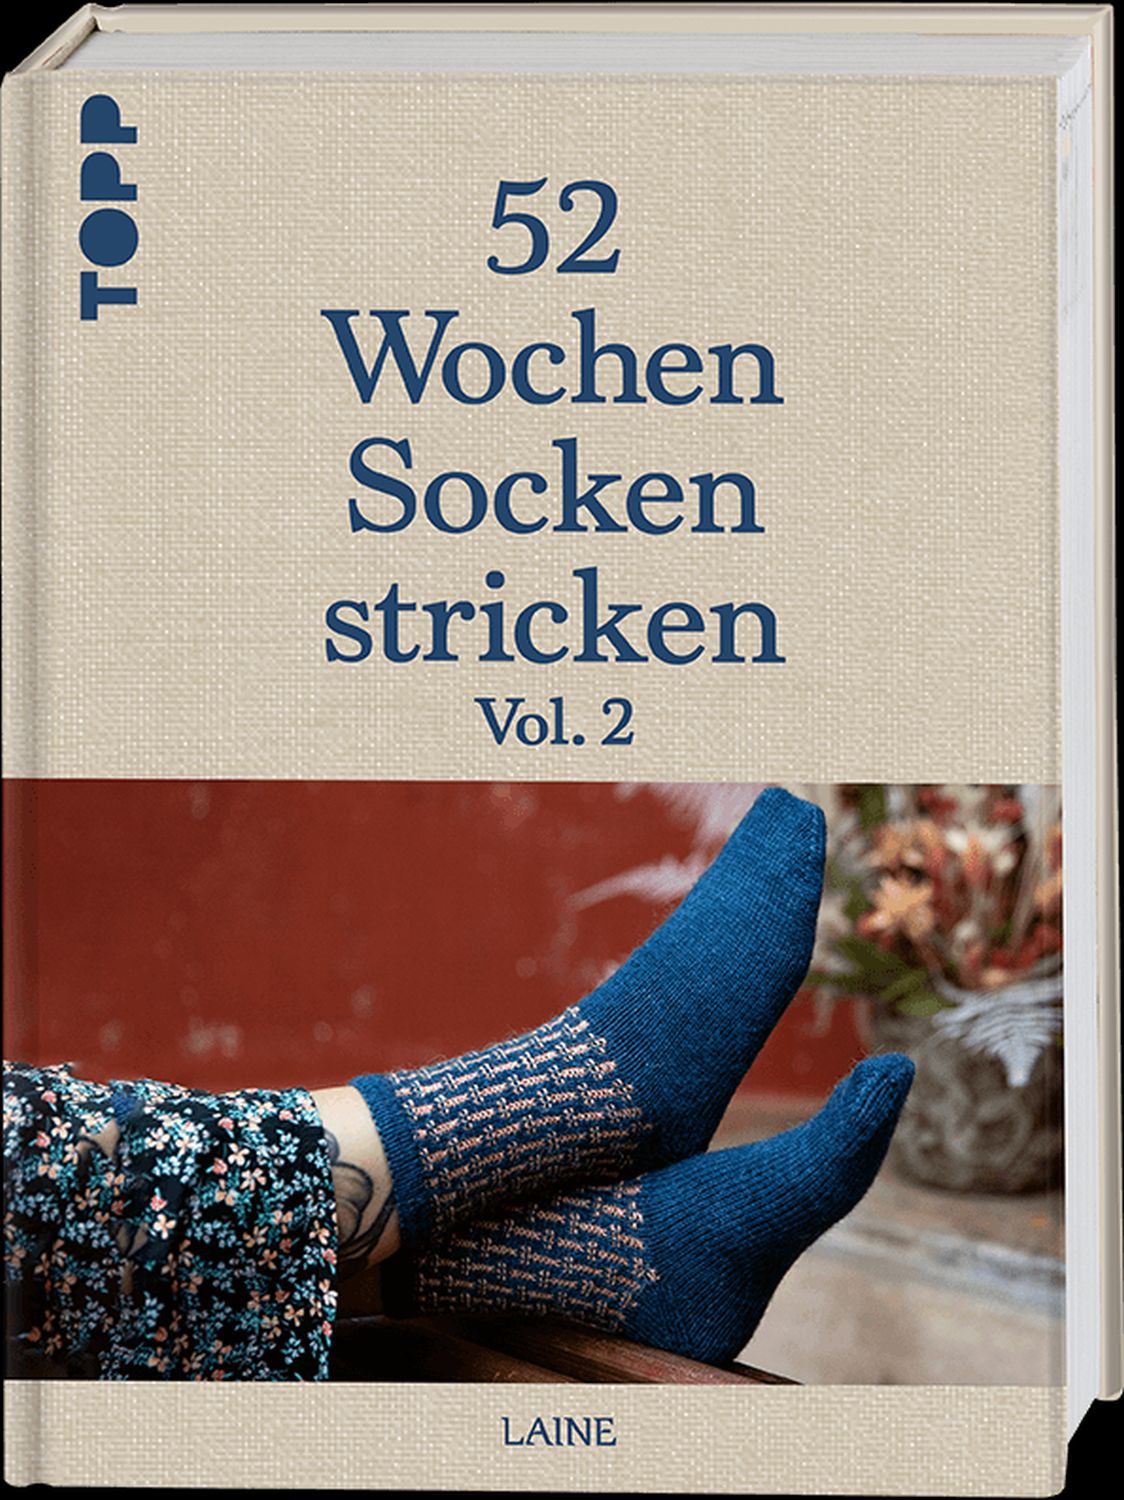 52 Wochen Socken stricken Vol. 2, 57079